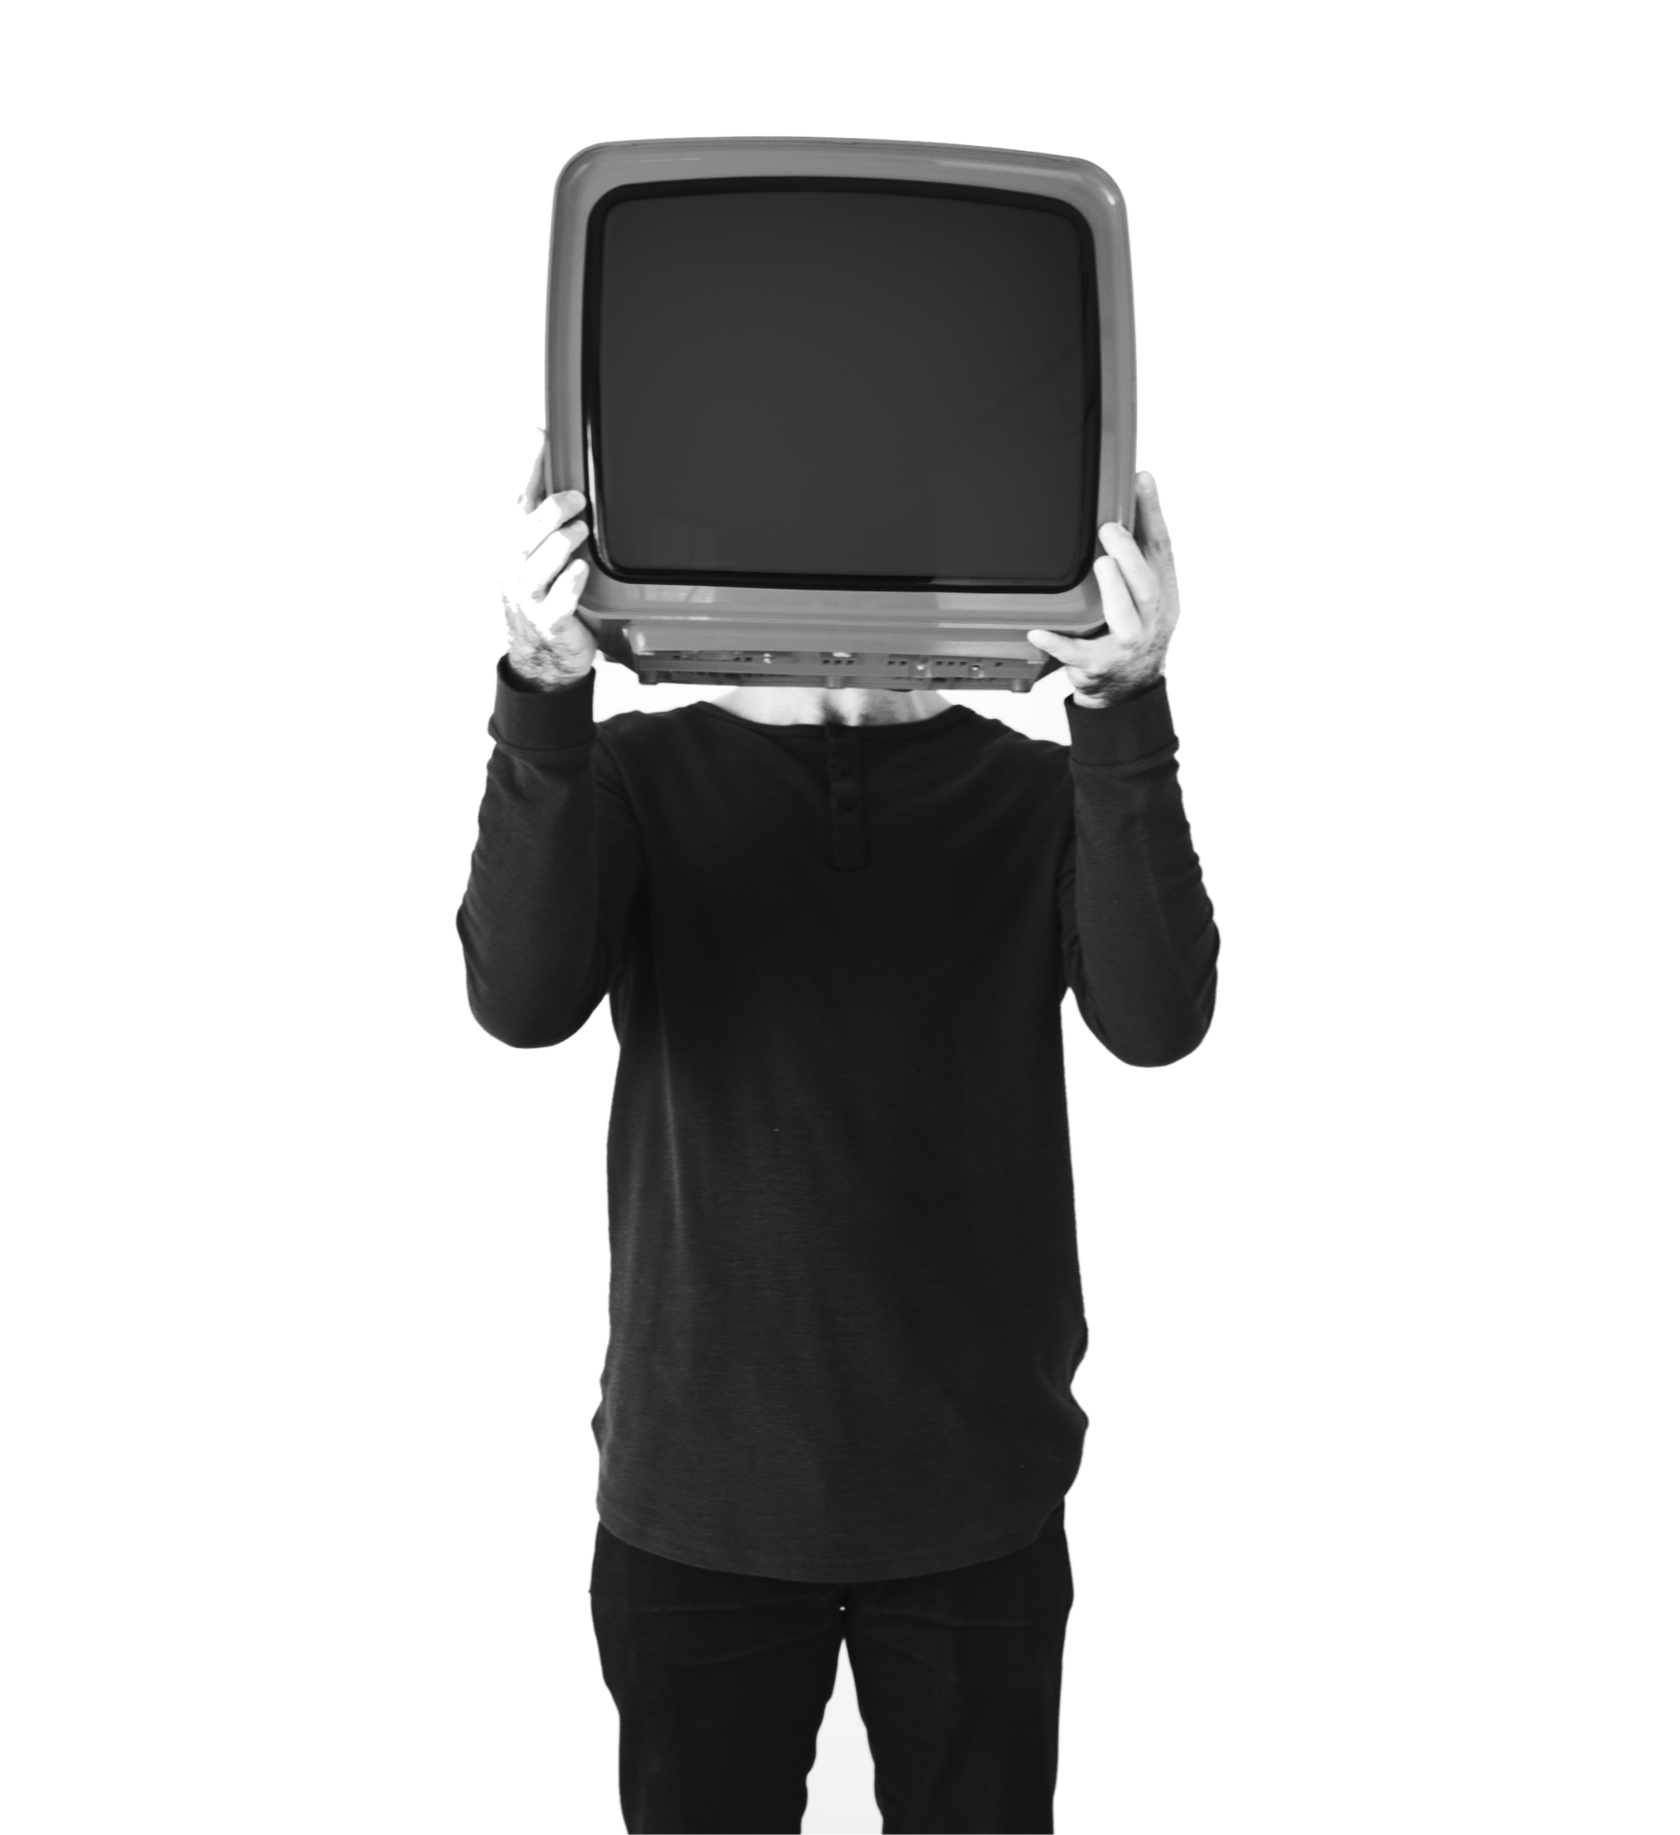 Телевизор вместо головы. Человек телевизор. Человек держит телевизор. Мужчина с телевизором в руках. Картинка tv man